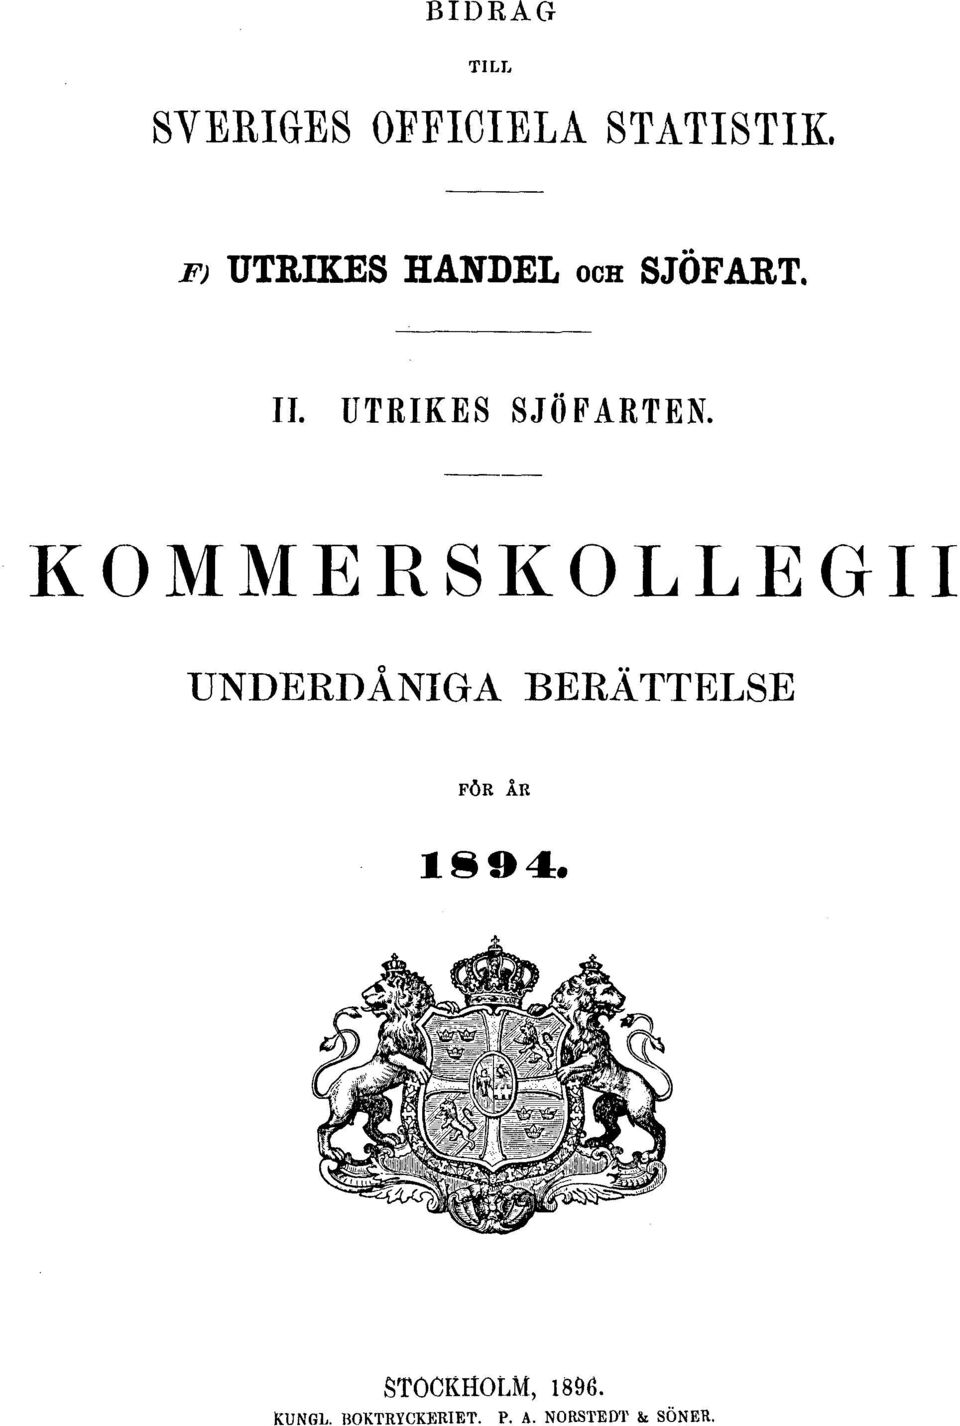 KOMMERSKOLLEGII UNDERDÅNIGA BERÄTTELSE FÖR ÅR 1894.